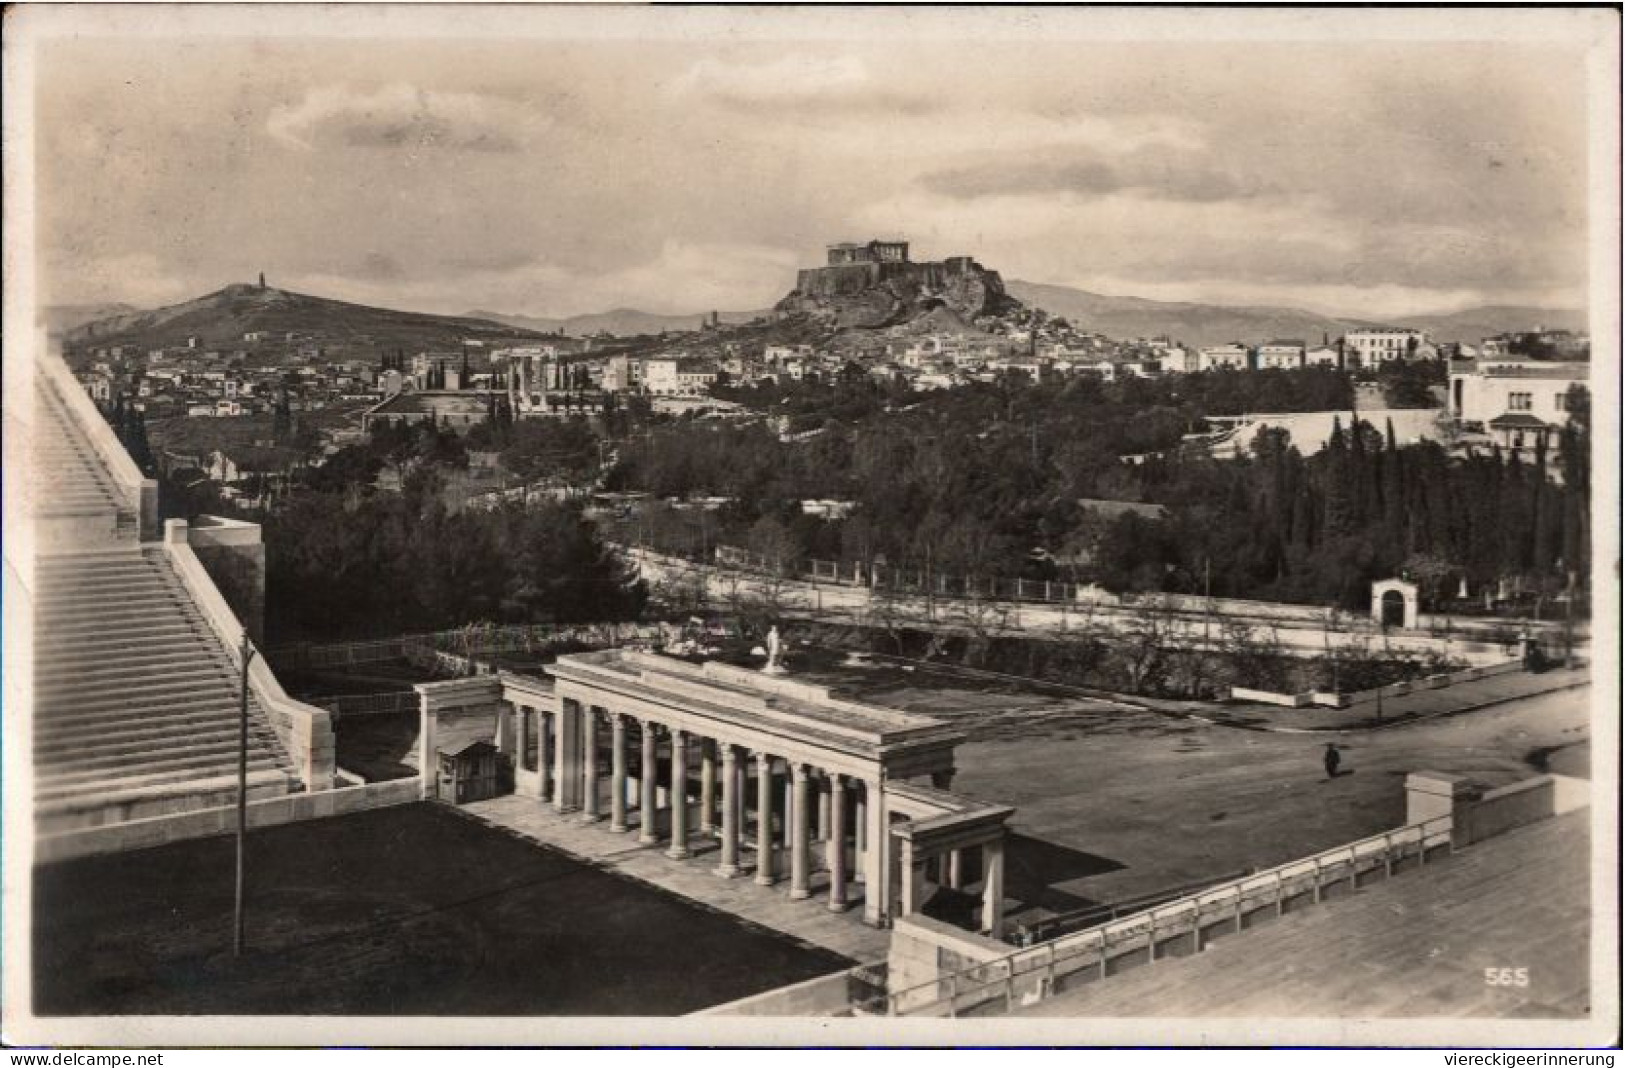 ! 1928 Ansichtskarte, Athen, Stadion, Stadium, Griechenland, Greece - Stadi